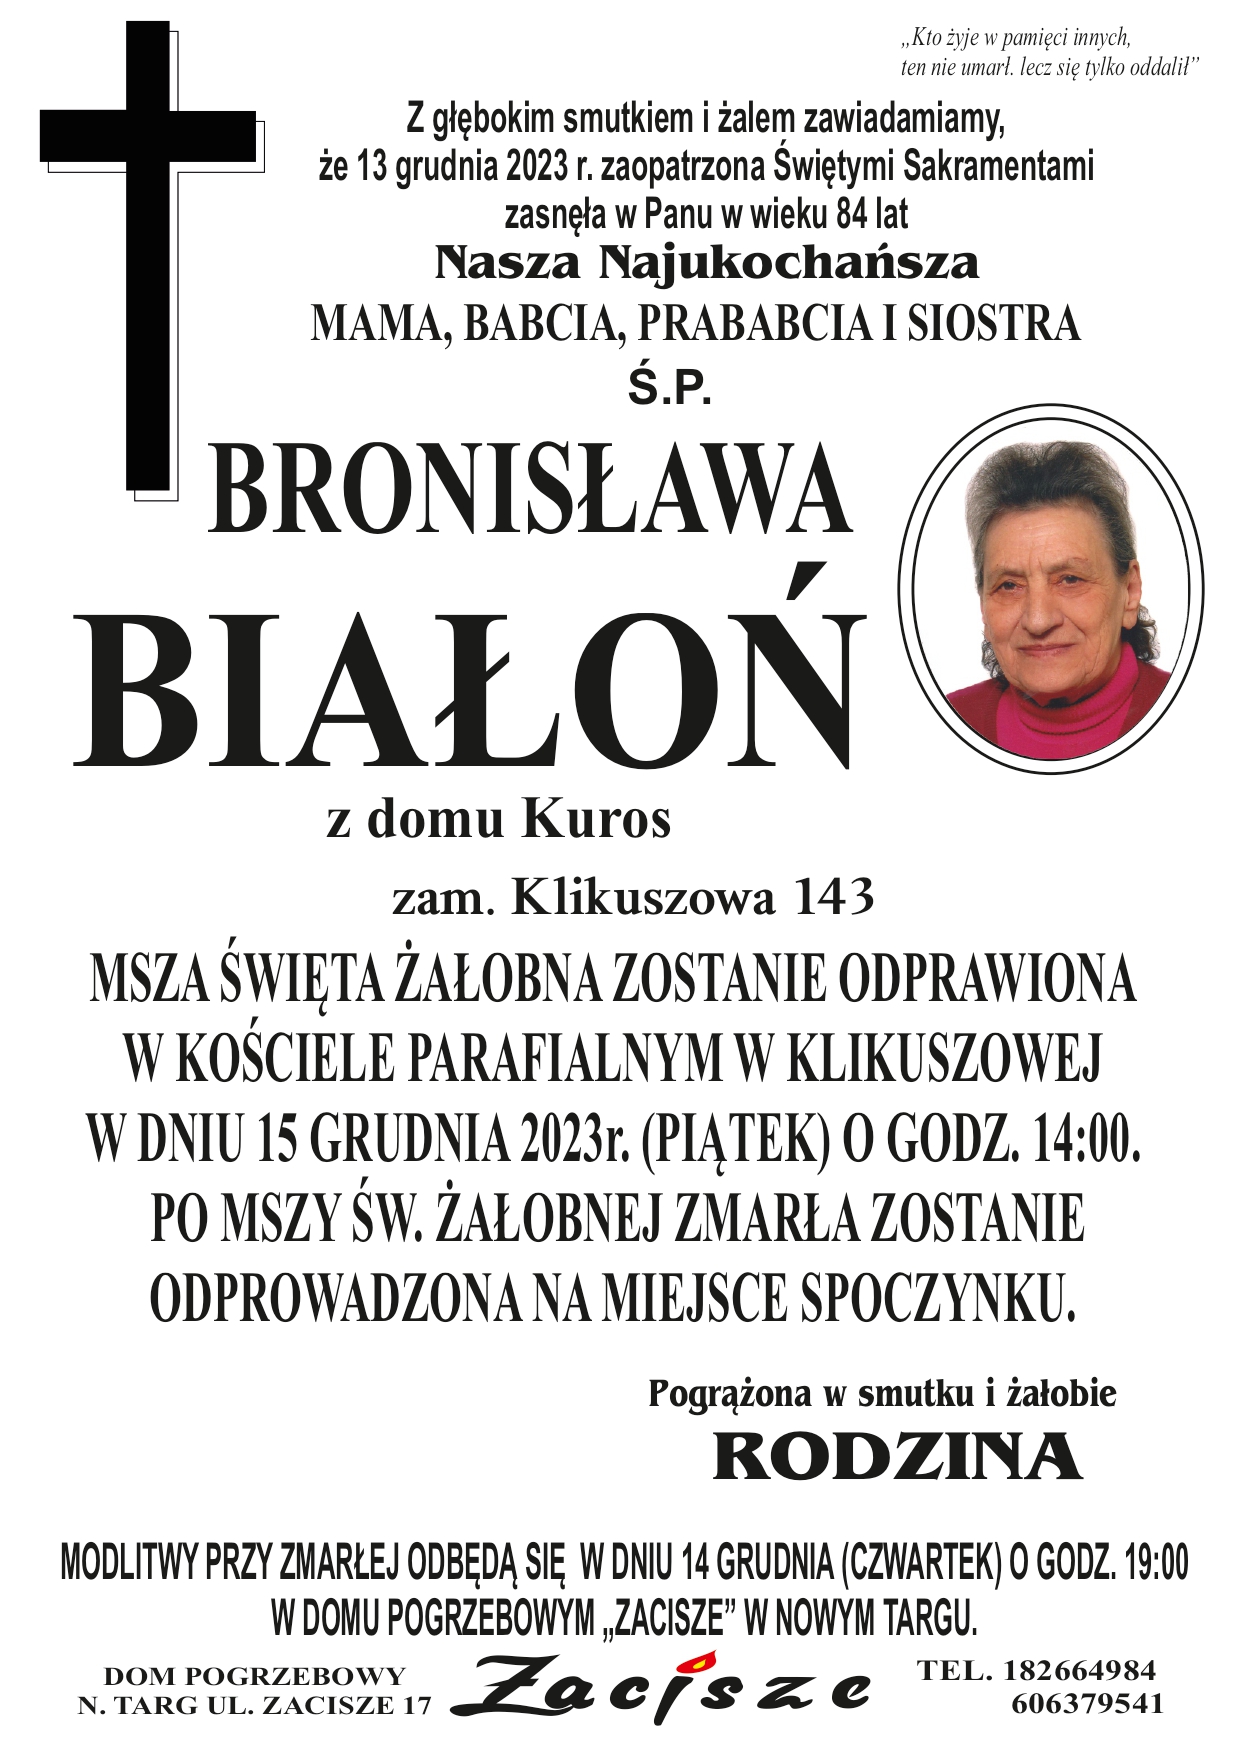 Bronisława Białoń